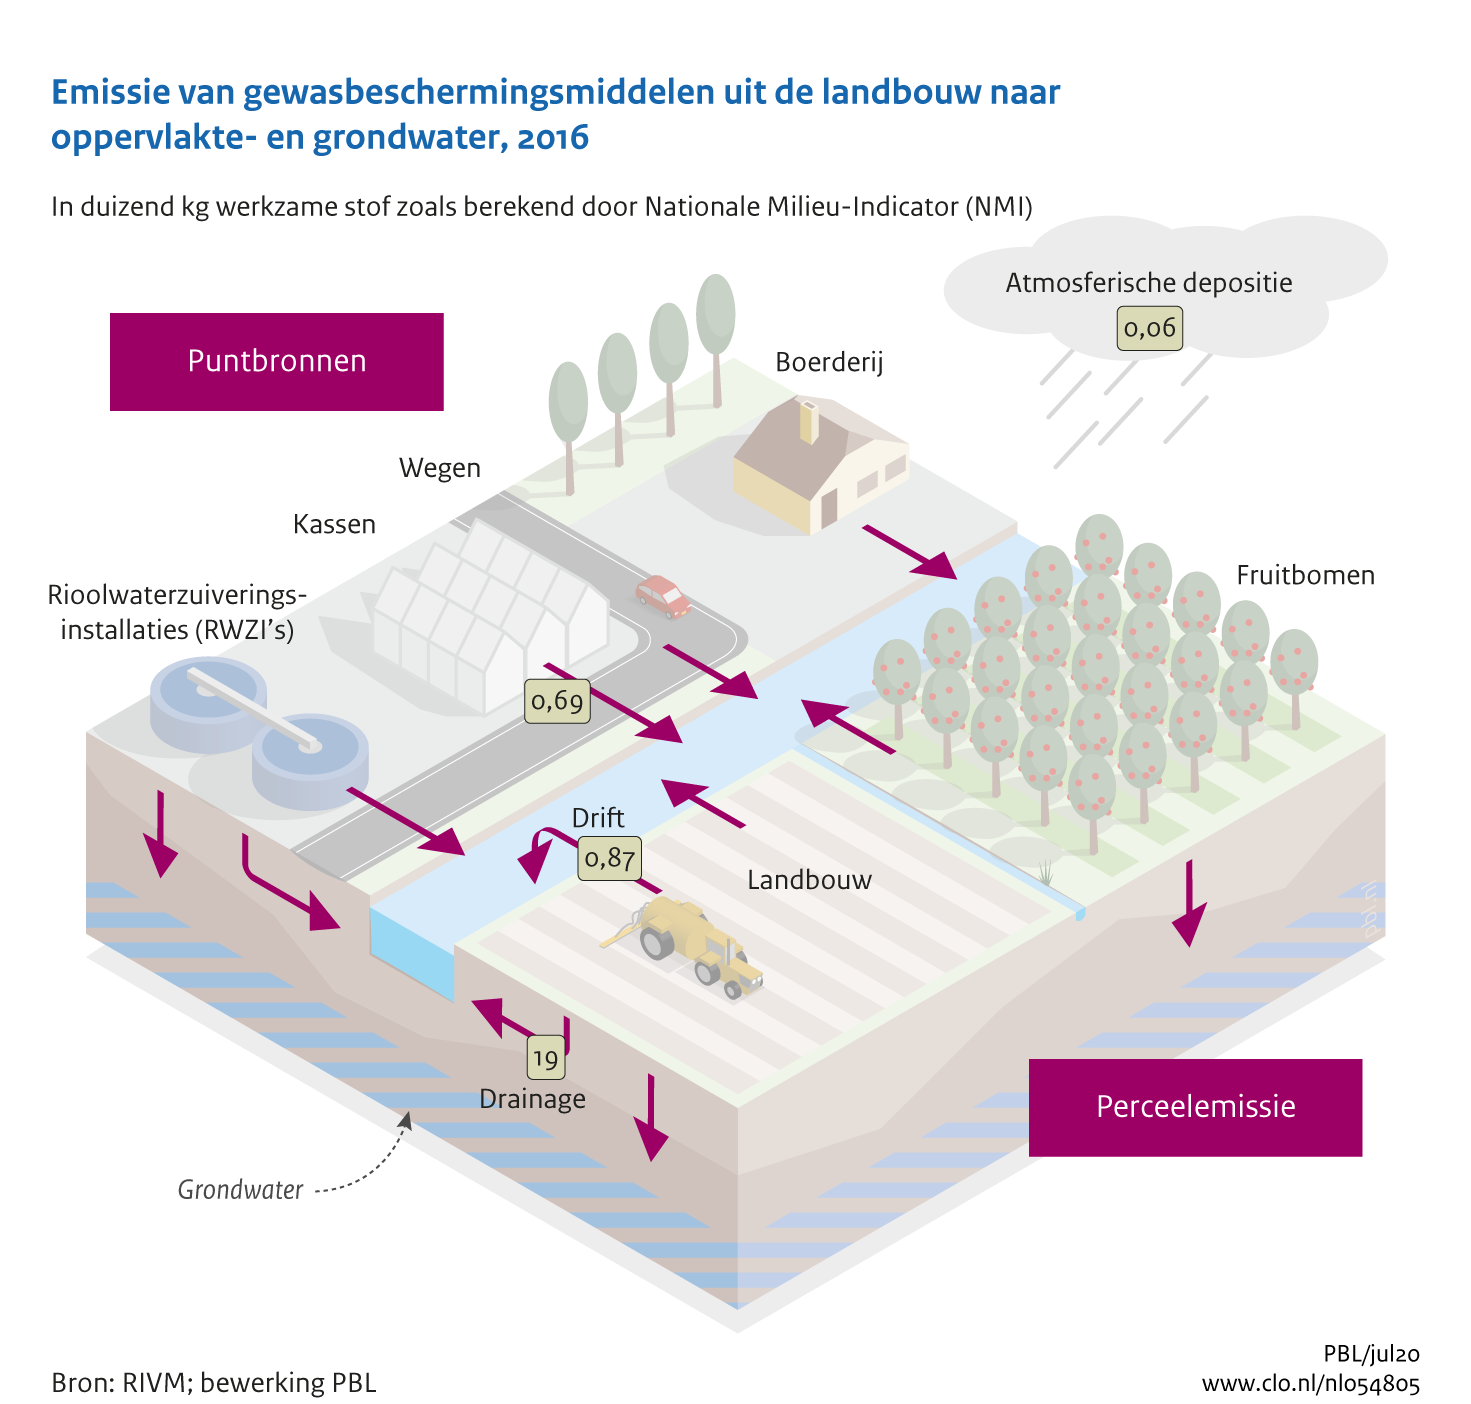 Figuur  Emissie van gewasbeschermingsmiddelen uit de landbouw naar oppervlaktewater . In de rest van de tekst wordt deze figuur uitgebreider uitgelegd.